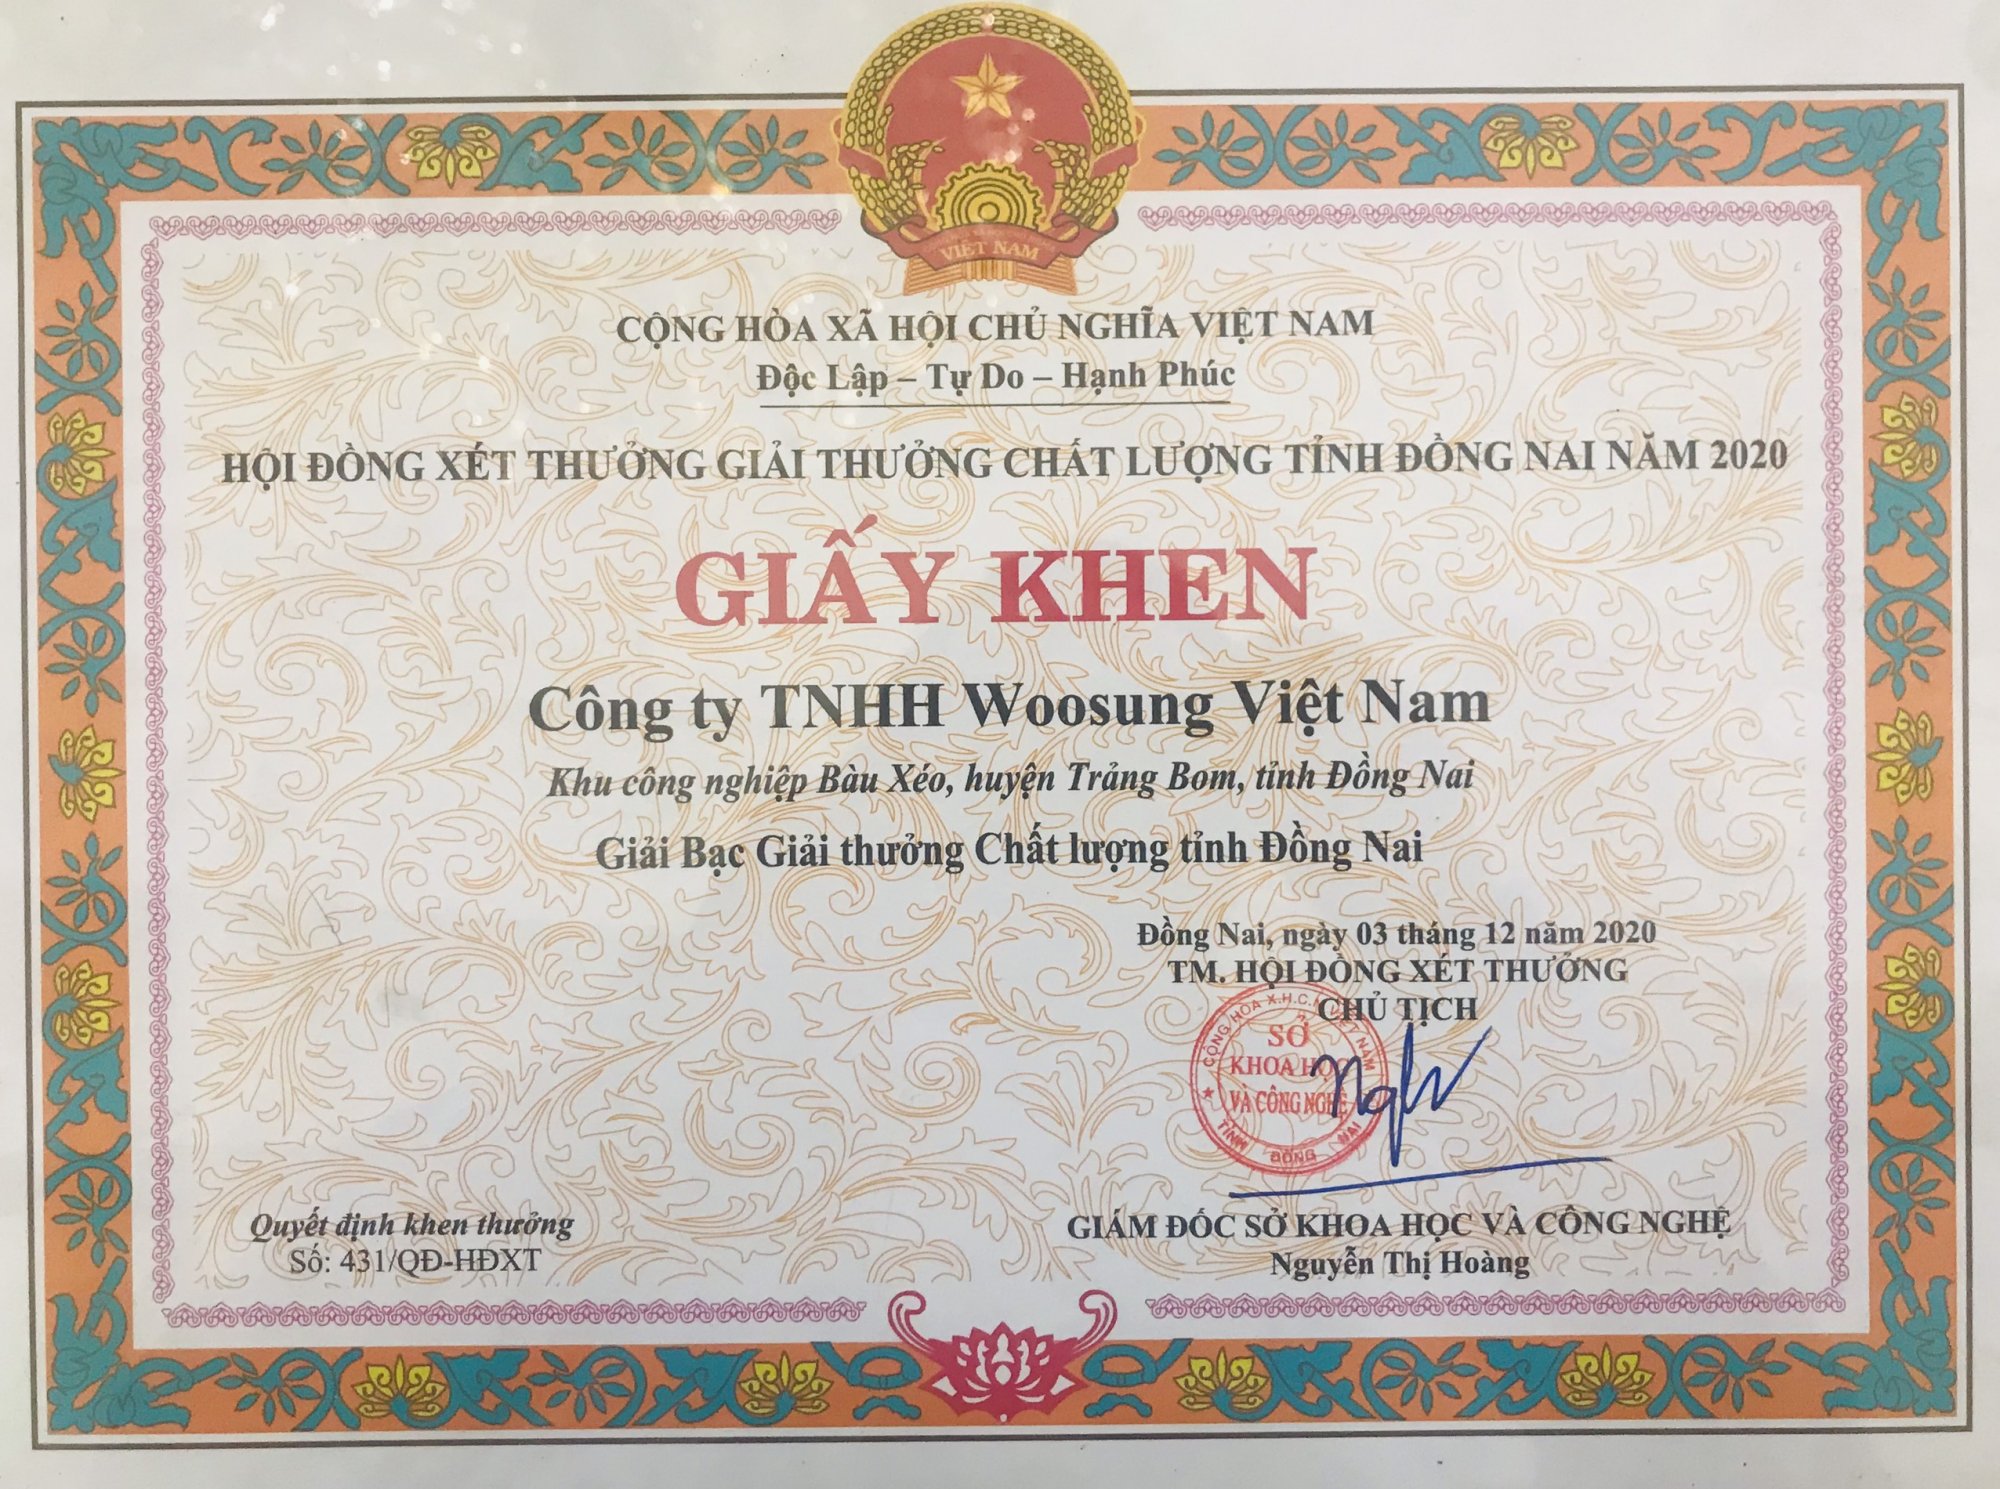 Giấy khen Woosung Việt Nam đạt giải Bạc giải thưởng Chất lượng tỉnh Đồng Nai năm 2020